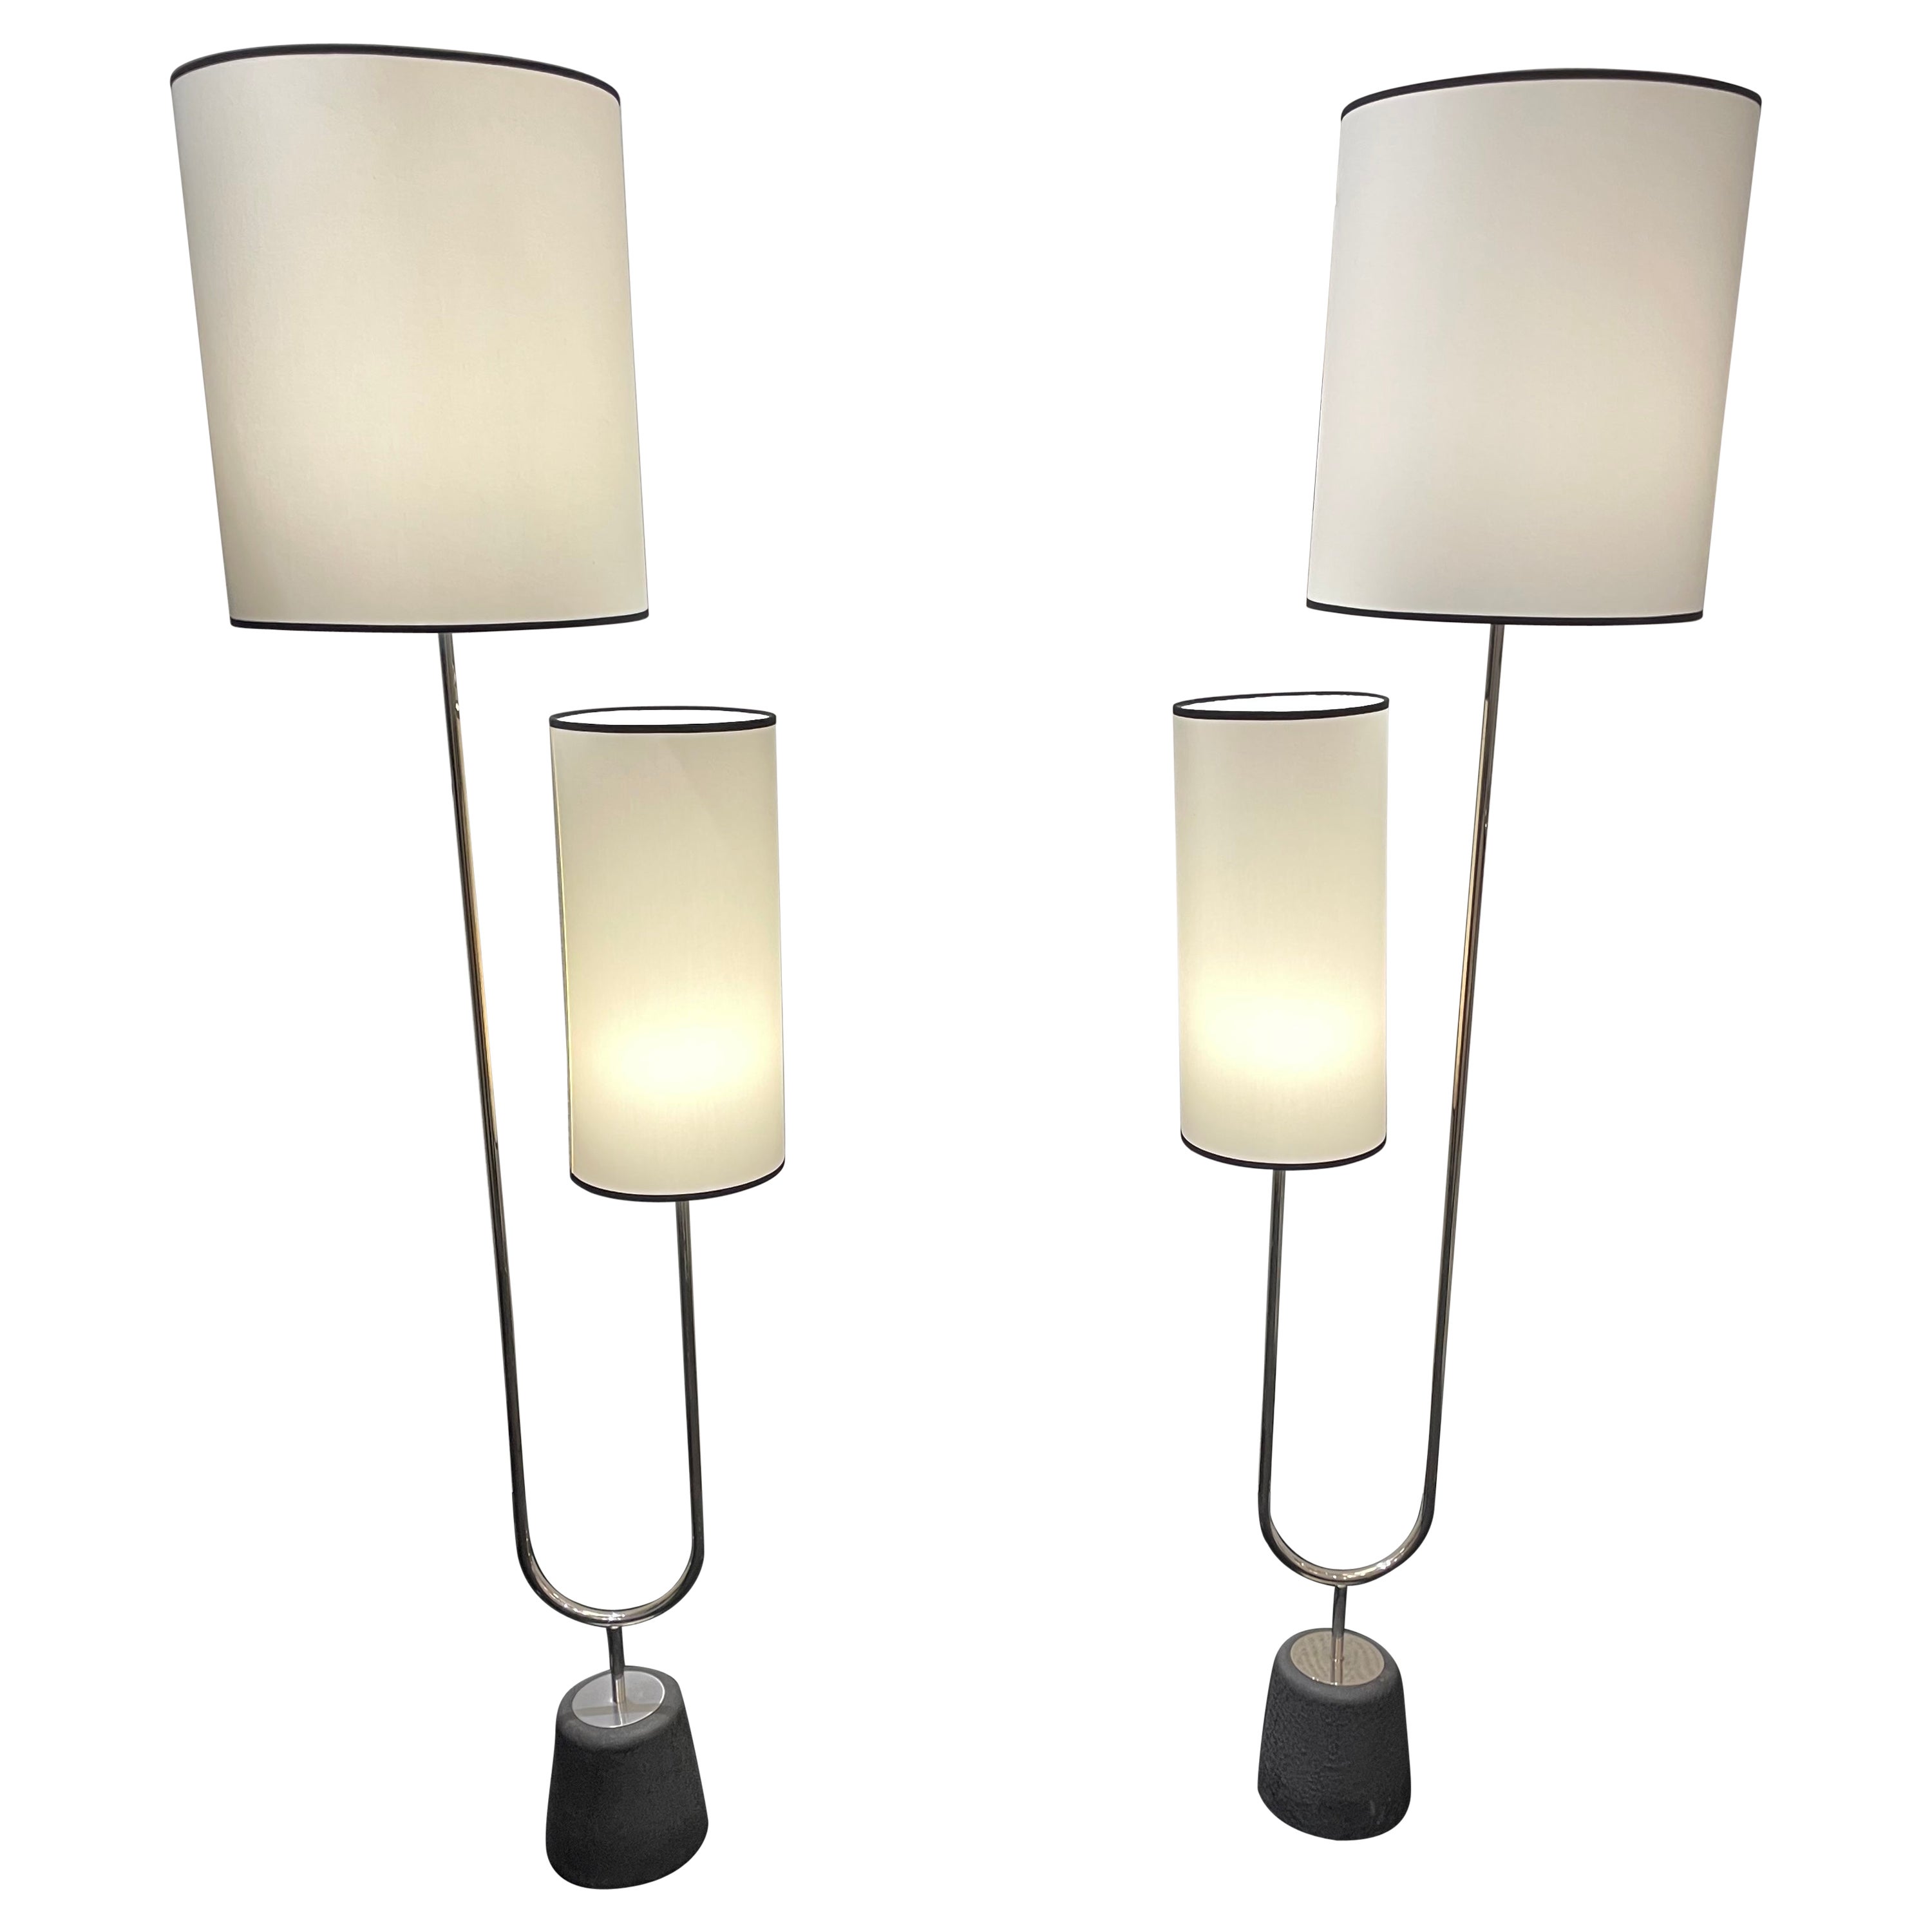 Pair of Floor Lamps by Arlus